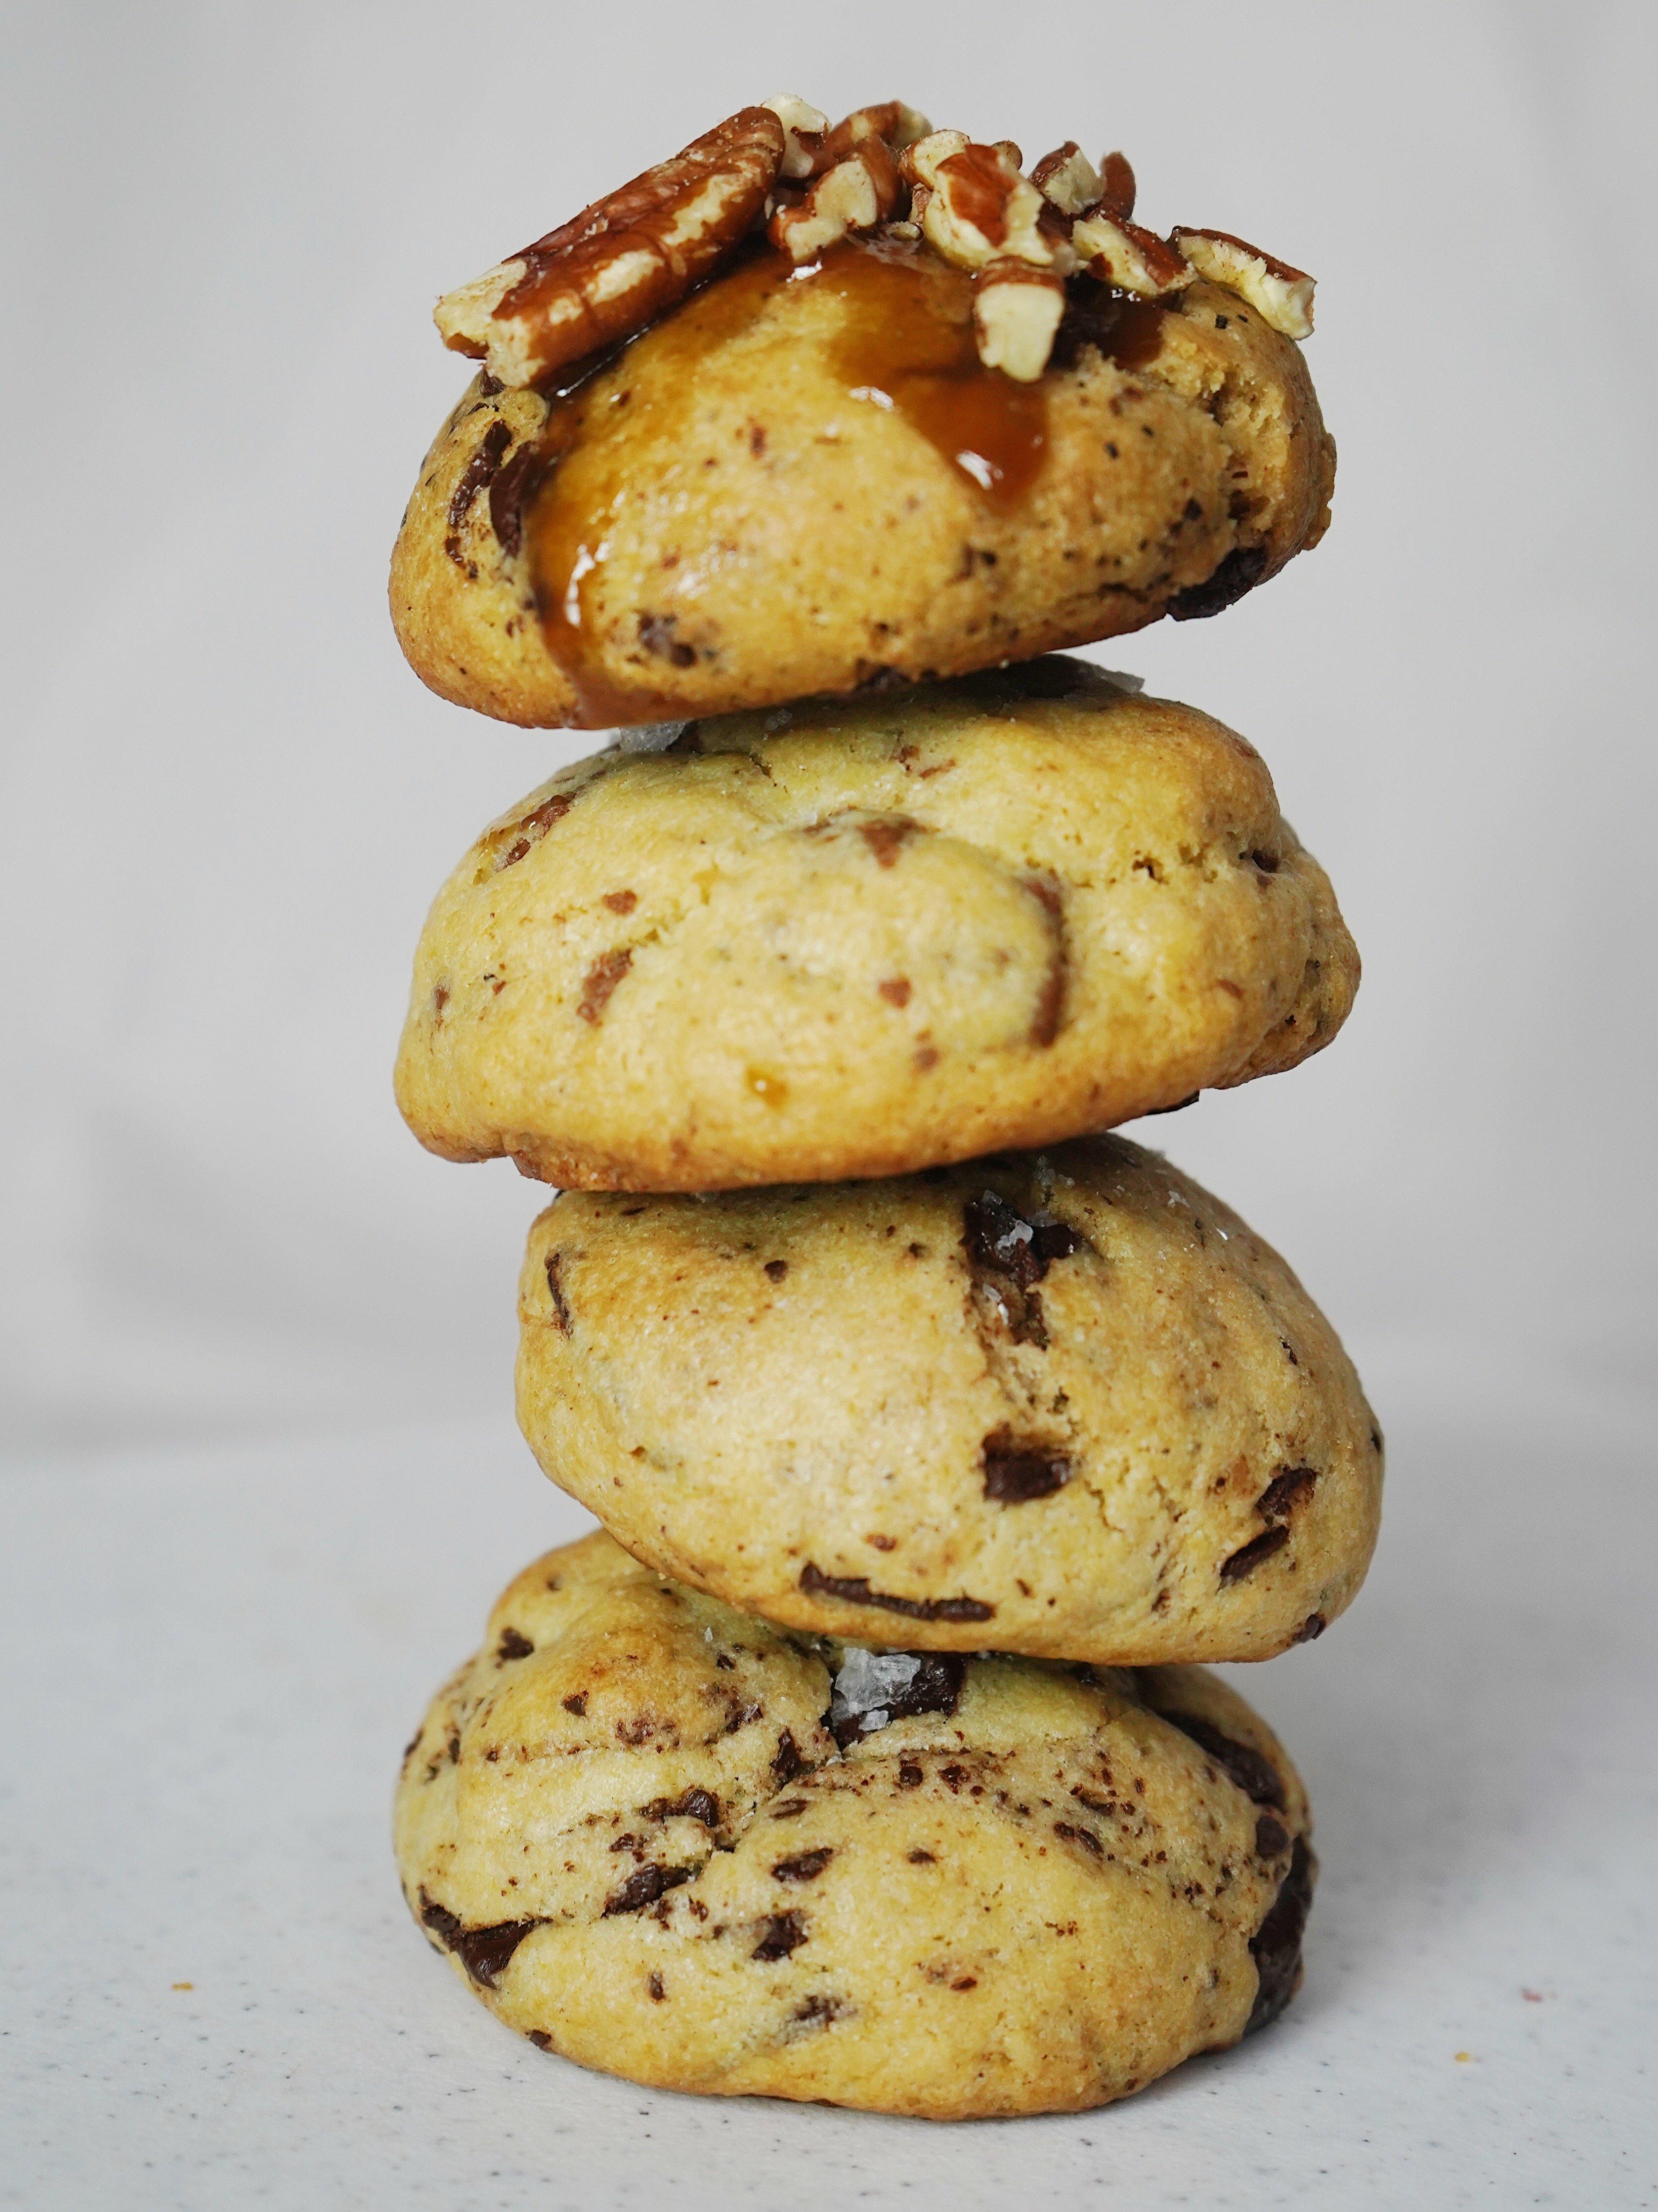 Bundle of 6 Cookies - Being Baked Cookies